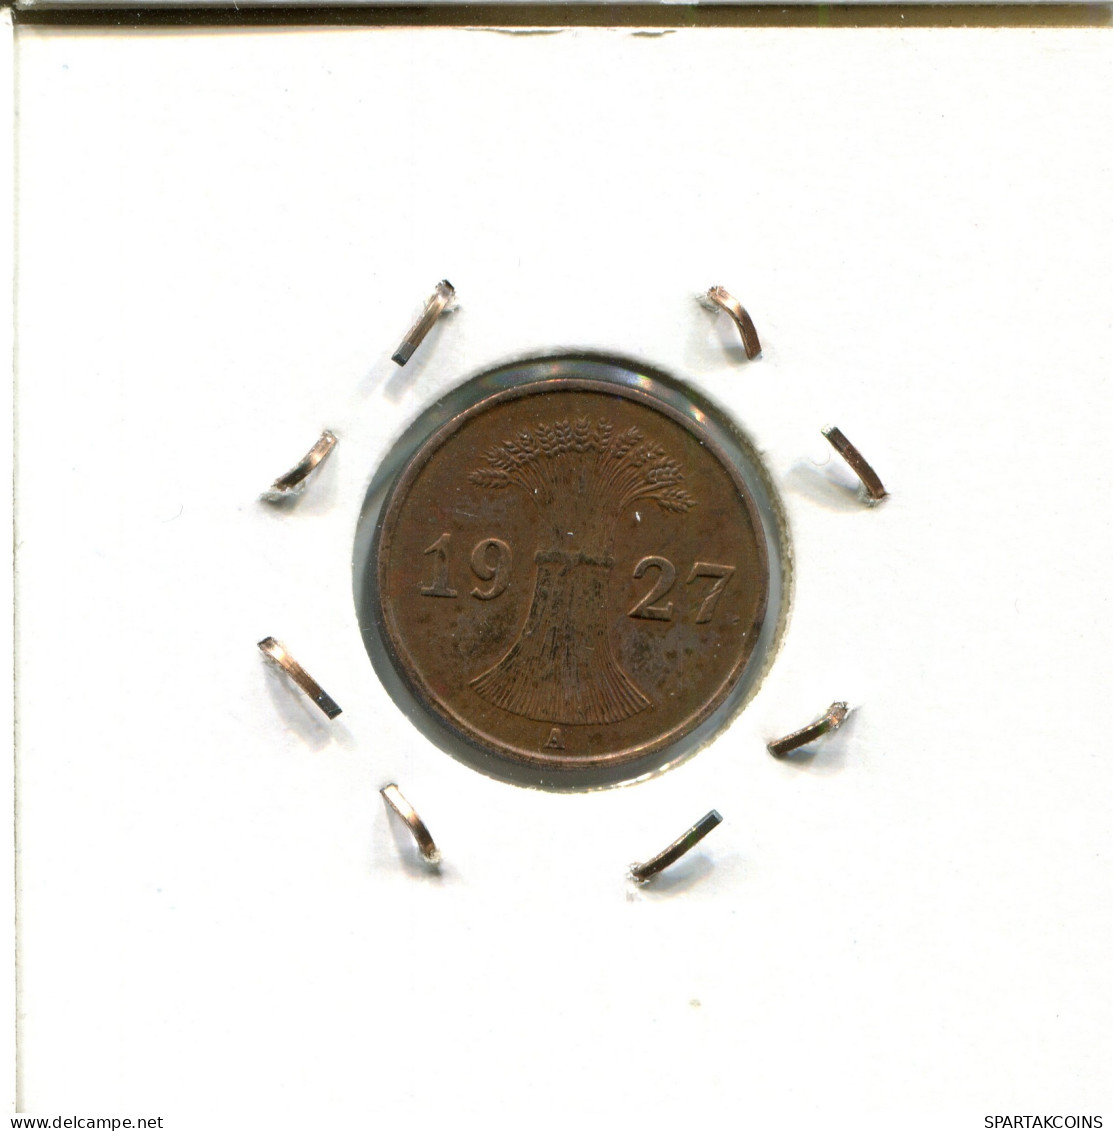 1 RENTENPFENNIG 1927 A GERMANY Coin #DA449.2.U - 1 Rentenpfennig & 1 Reichspfennig